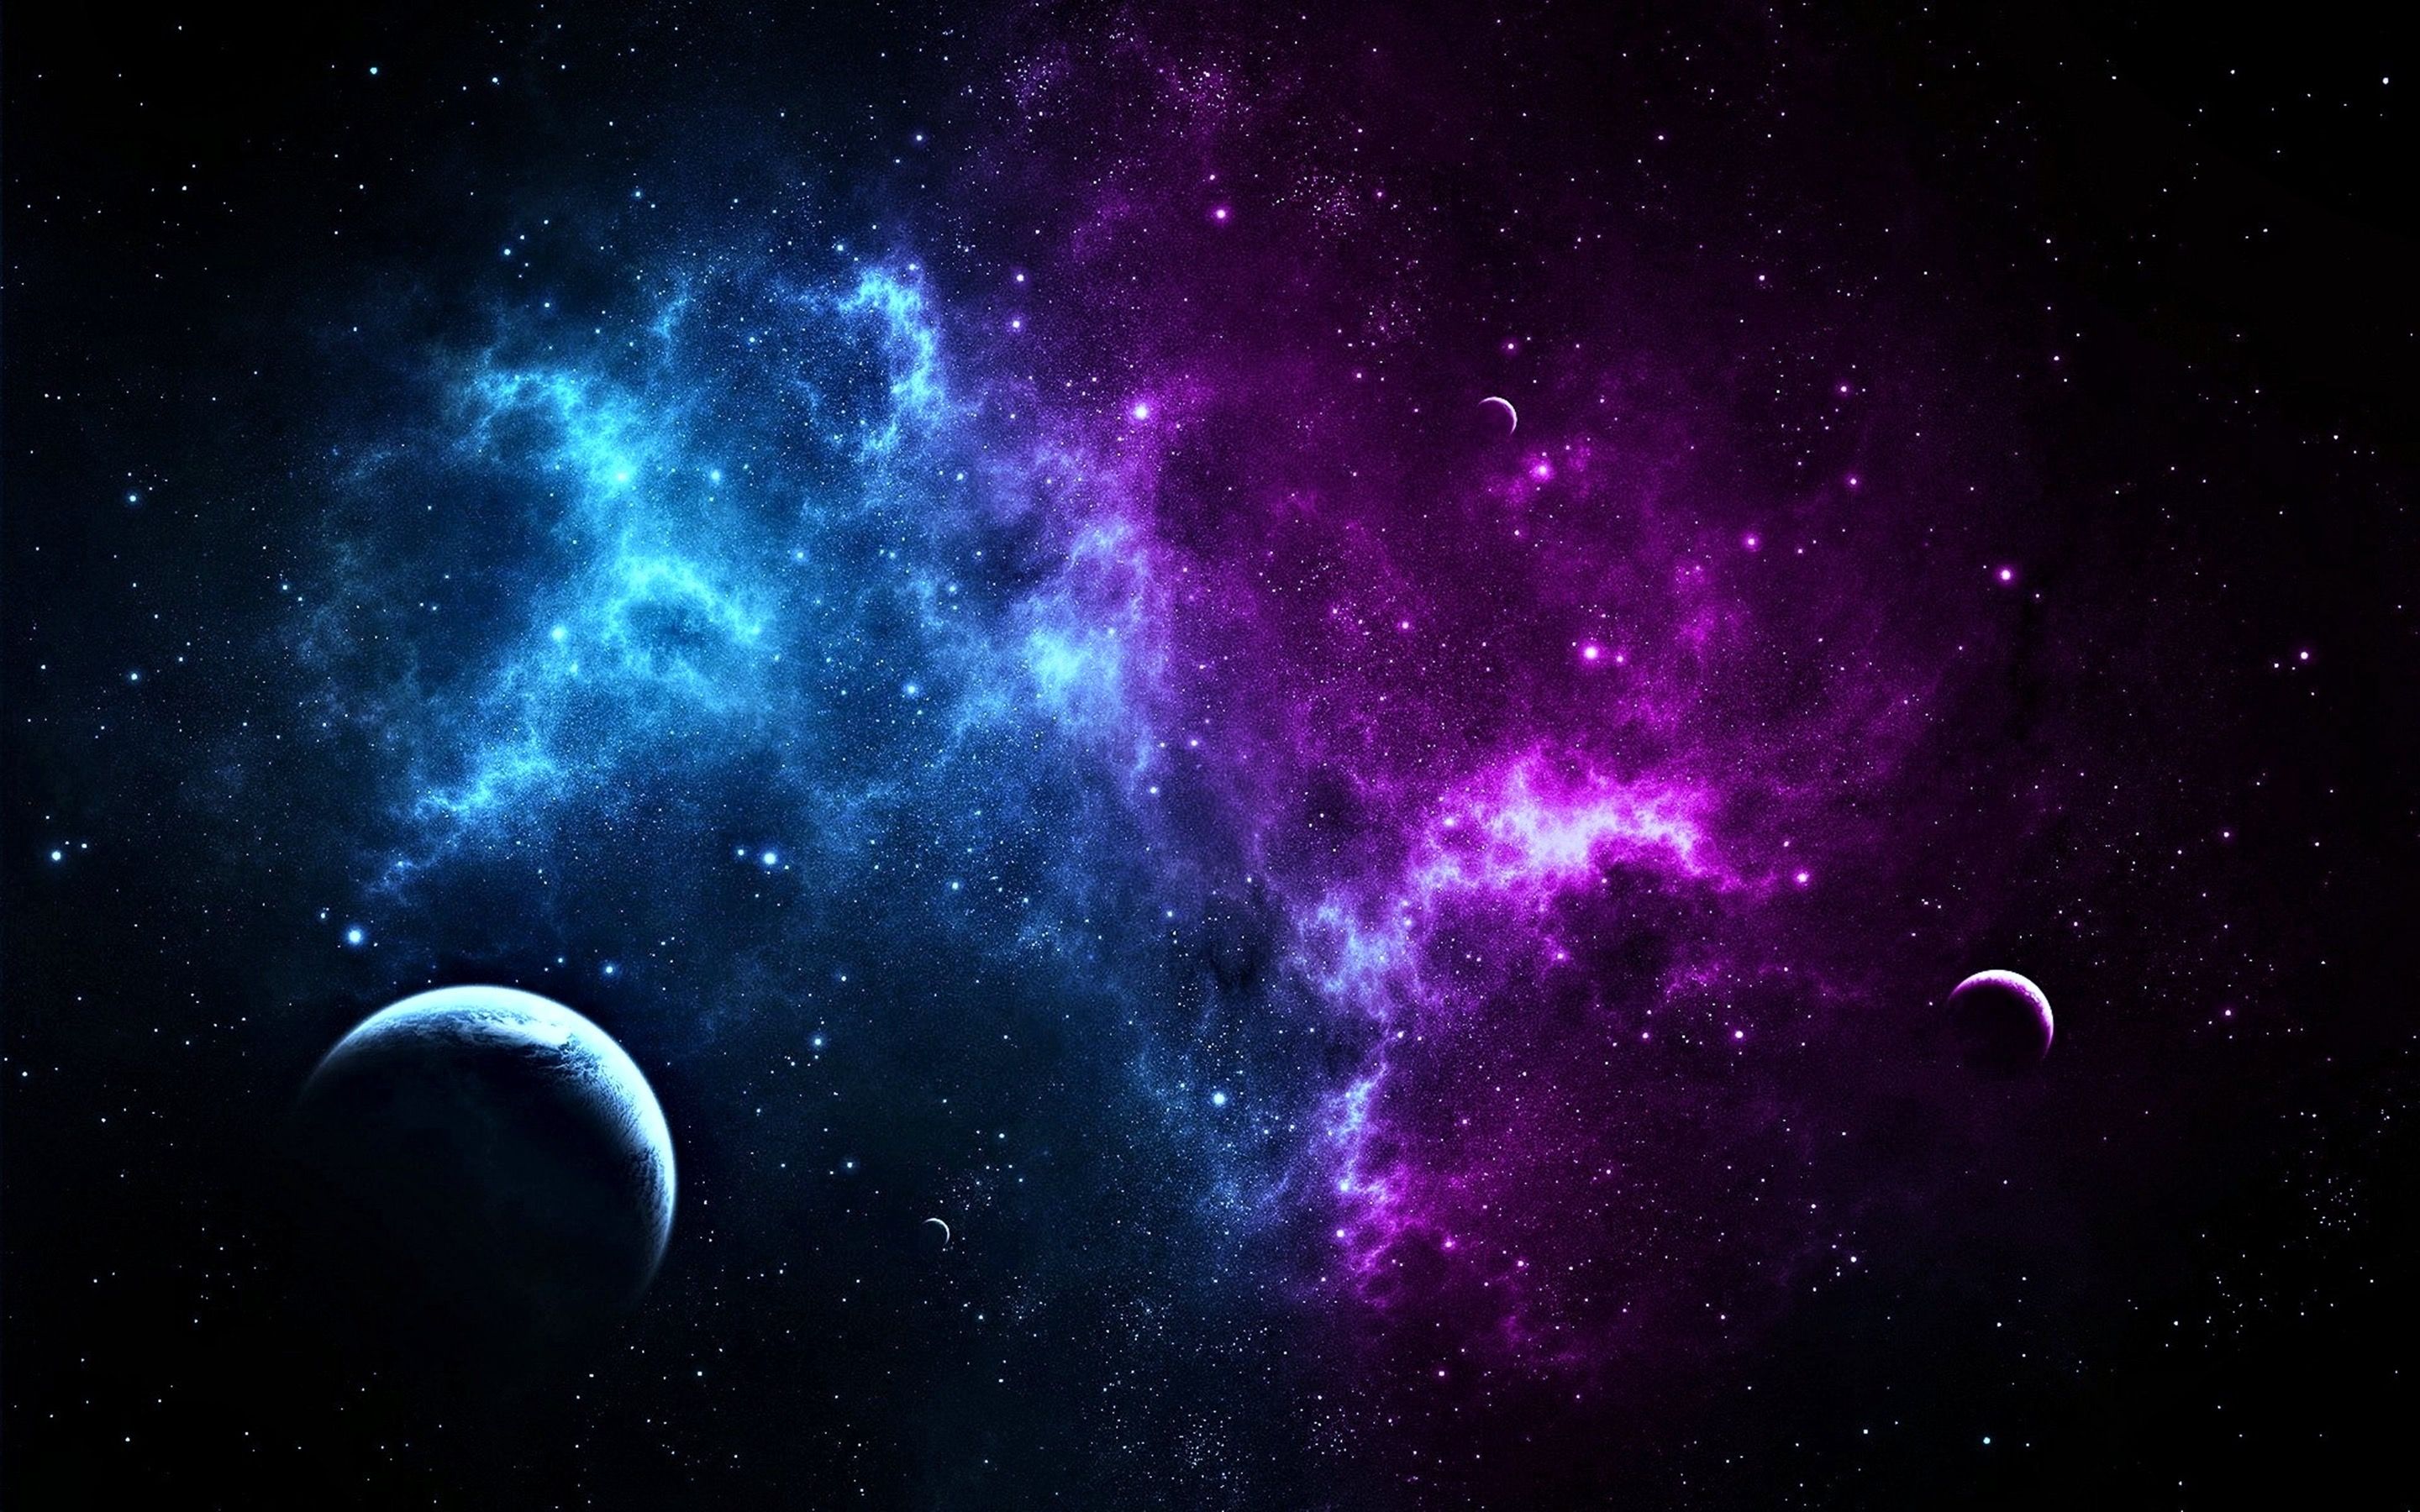 Hãy thưởng thức bầu trời đầy sắc màu tím đỏ bằng hình nền thiên văn tuyệt đẹp trên WallpaperDog! Đây là cơ hội để bạn chiêm ngưỡng vẻ đẹp phi thường của không gian và khát khao khám phá những điều lớn lao của vũ trụ. Hãy cùng WallpaperDog khám phá thế giới thiên văn thần bí này!